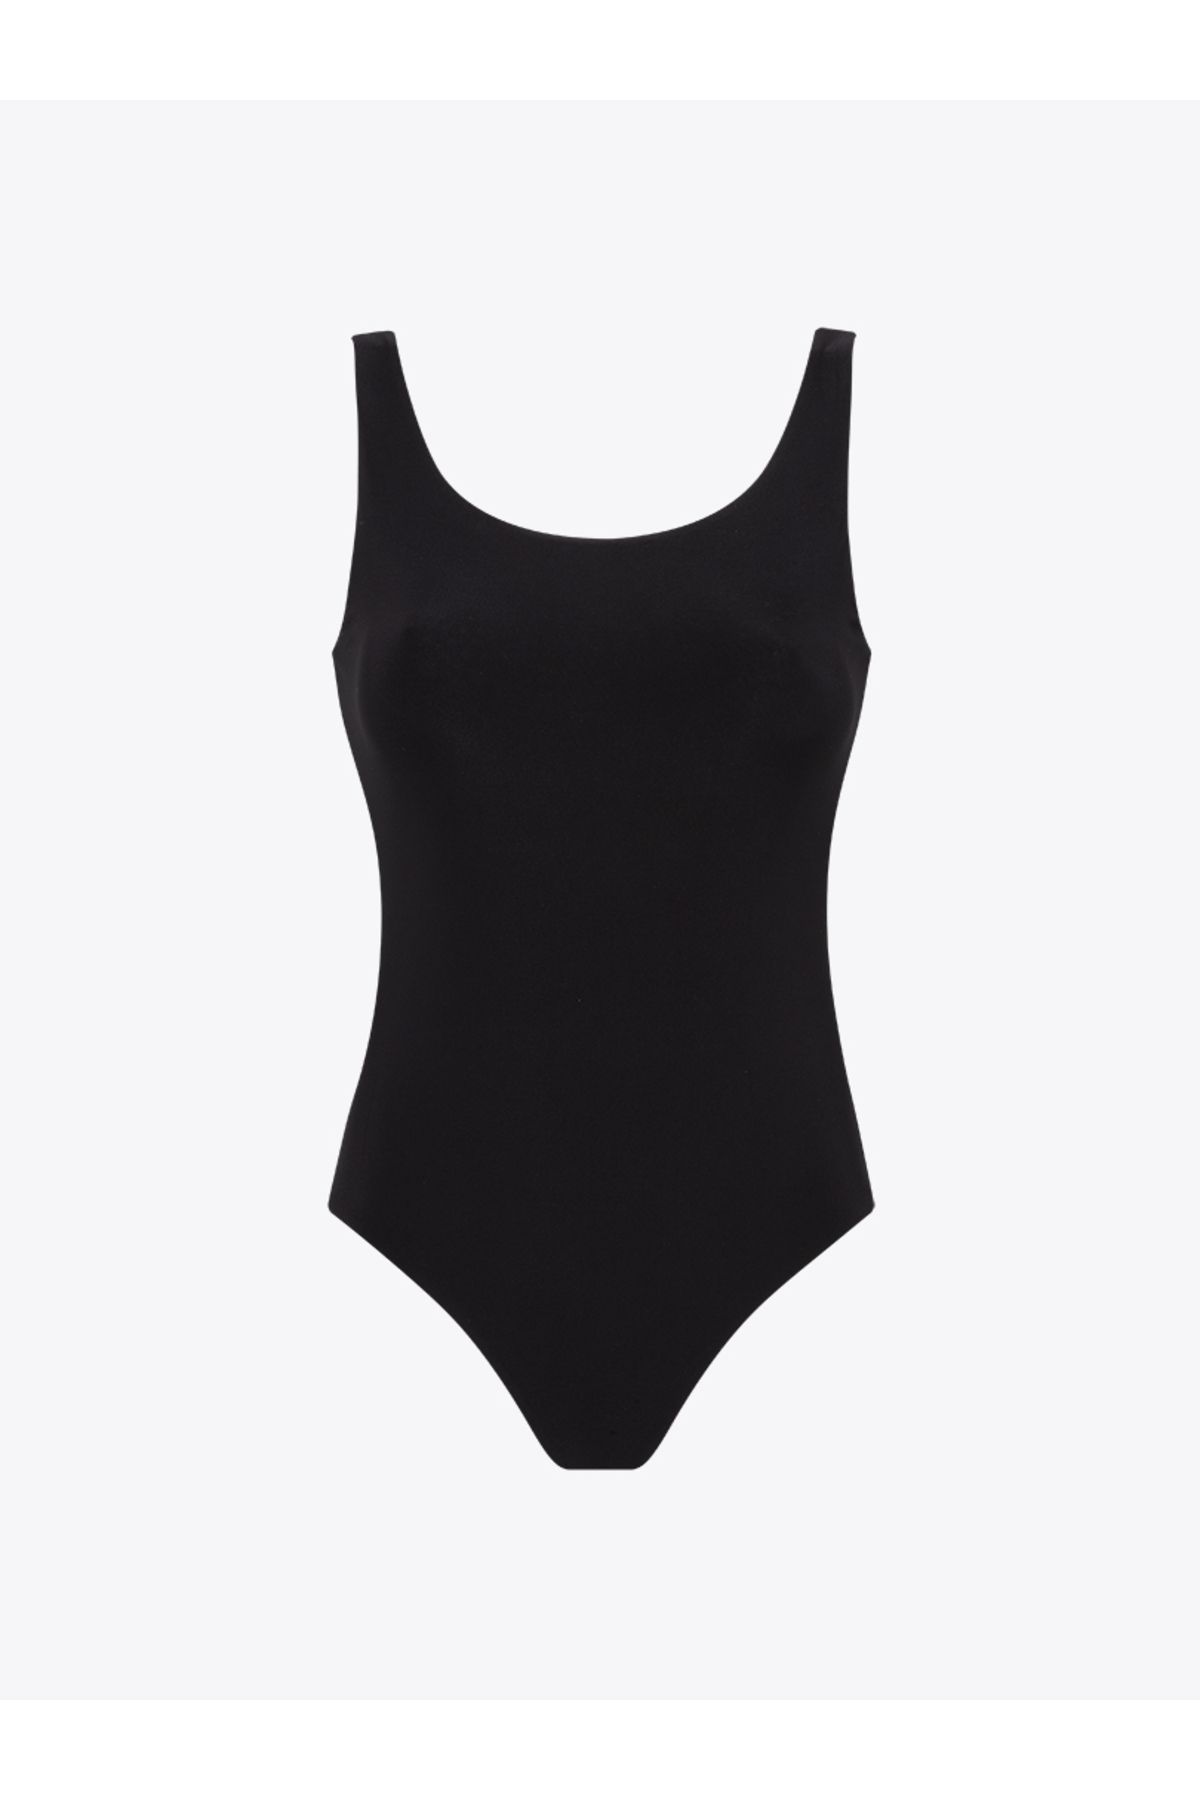 Rivus Yüzücü Atlet Kesim Alttan Çıtçıtlı Body - Siyah